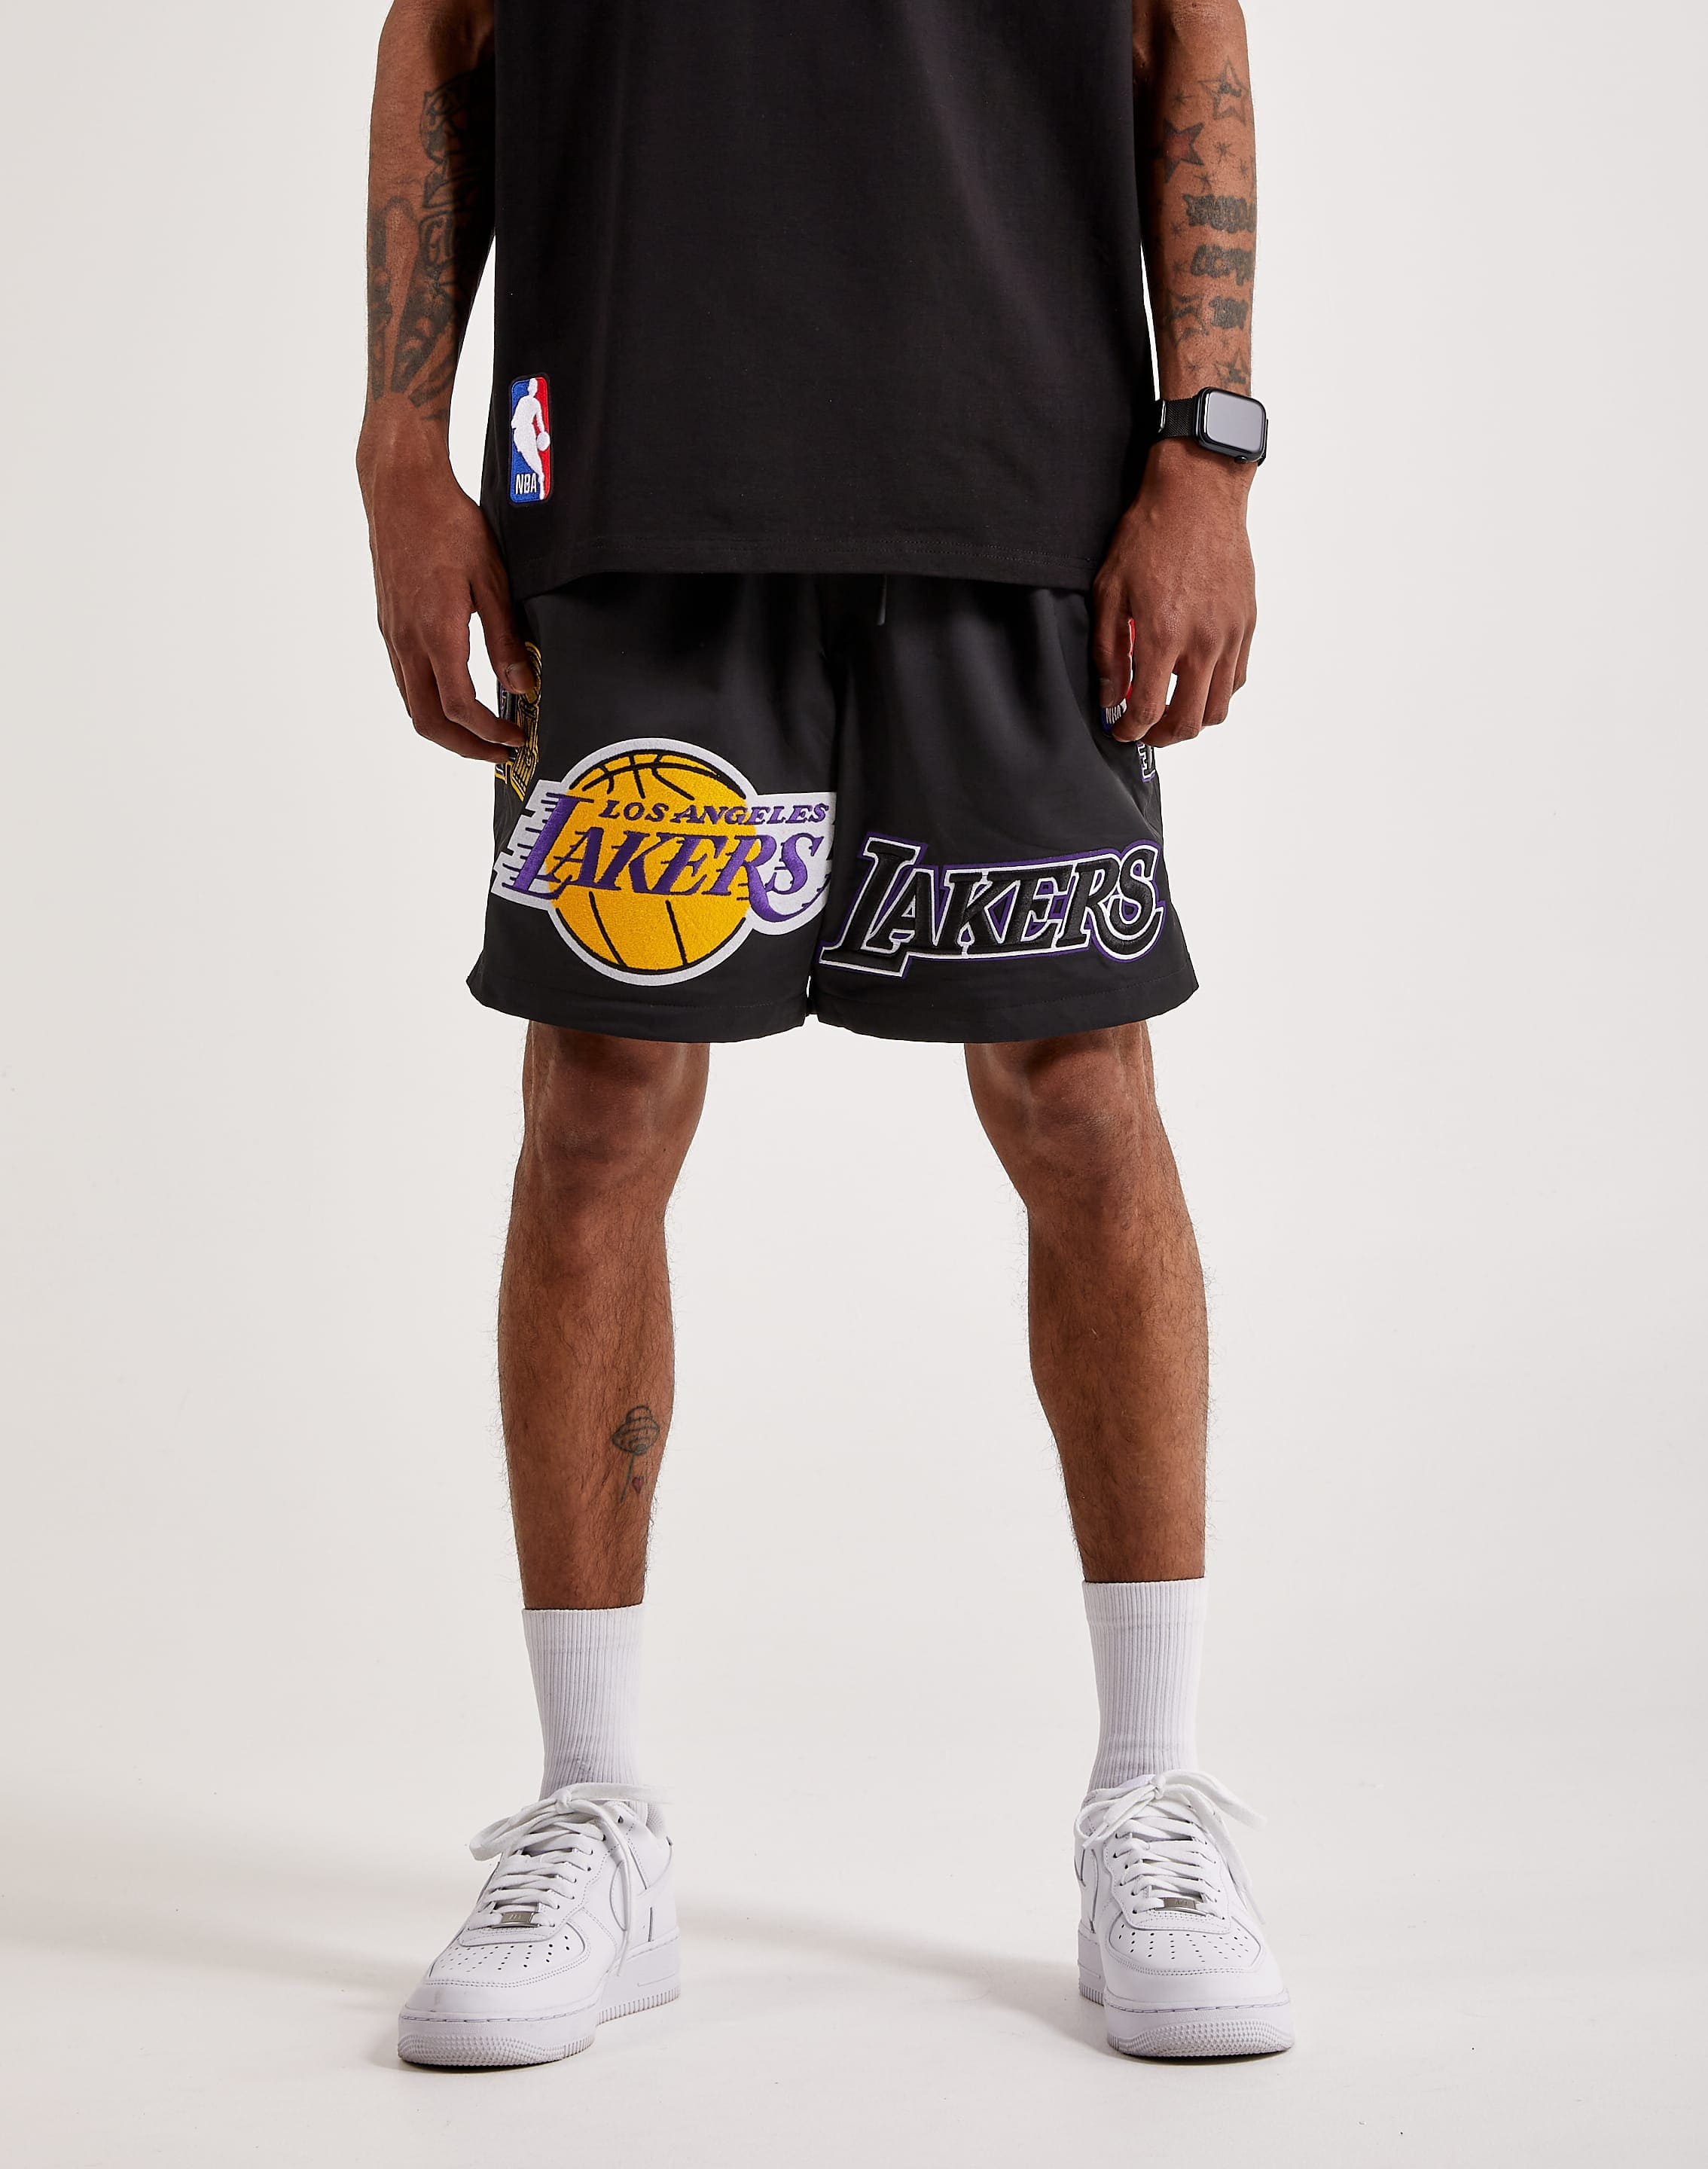 Mens Los Angeles Lakers Shorts, Lakers Basketball Shorts, Running